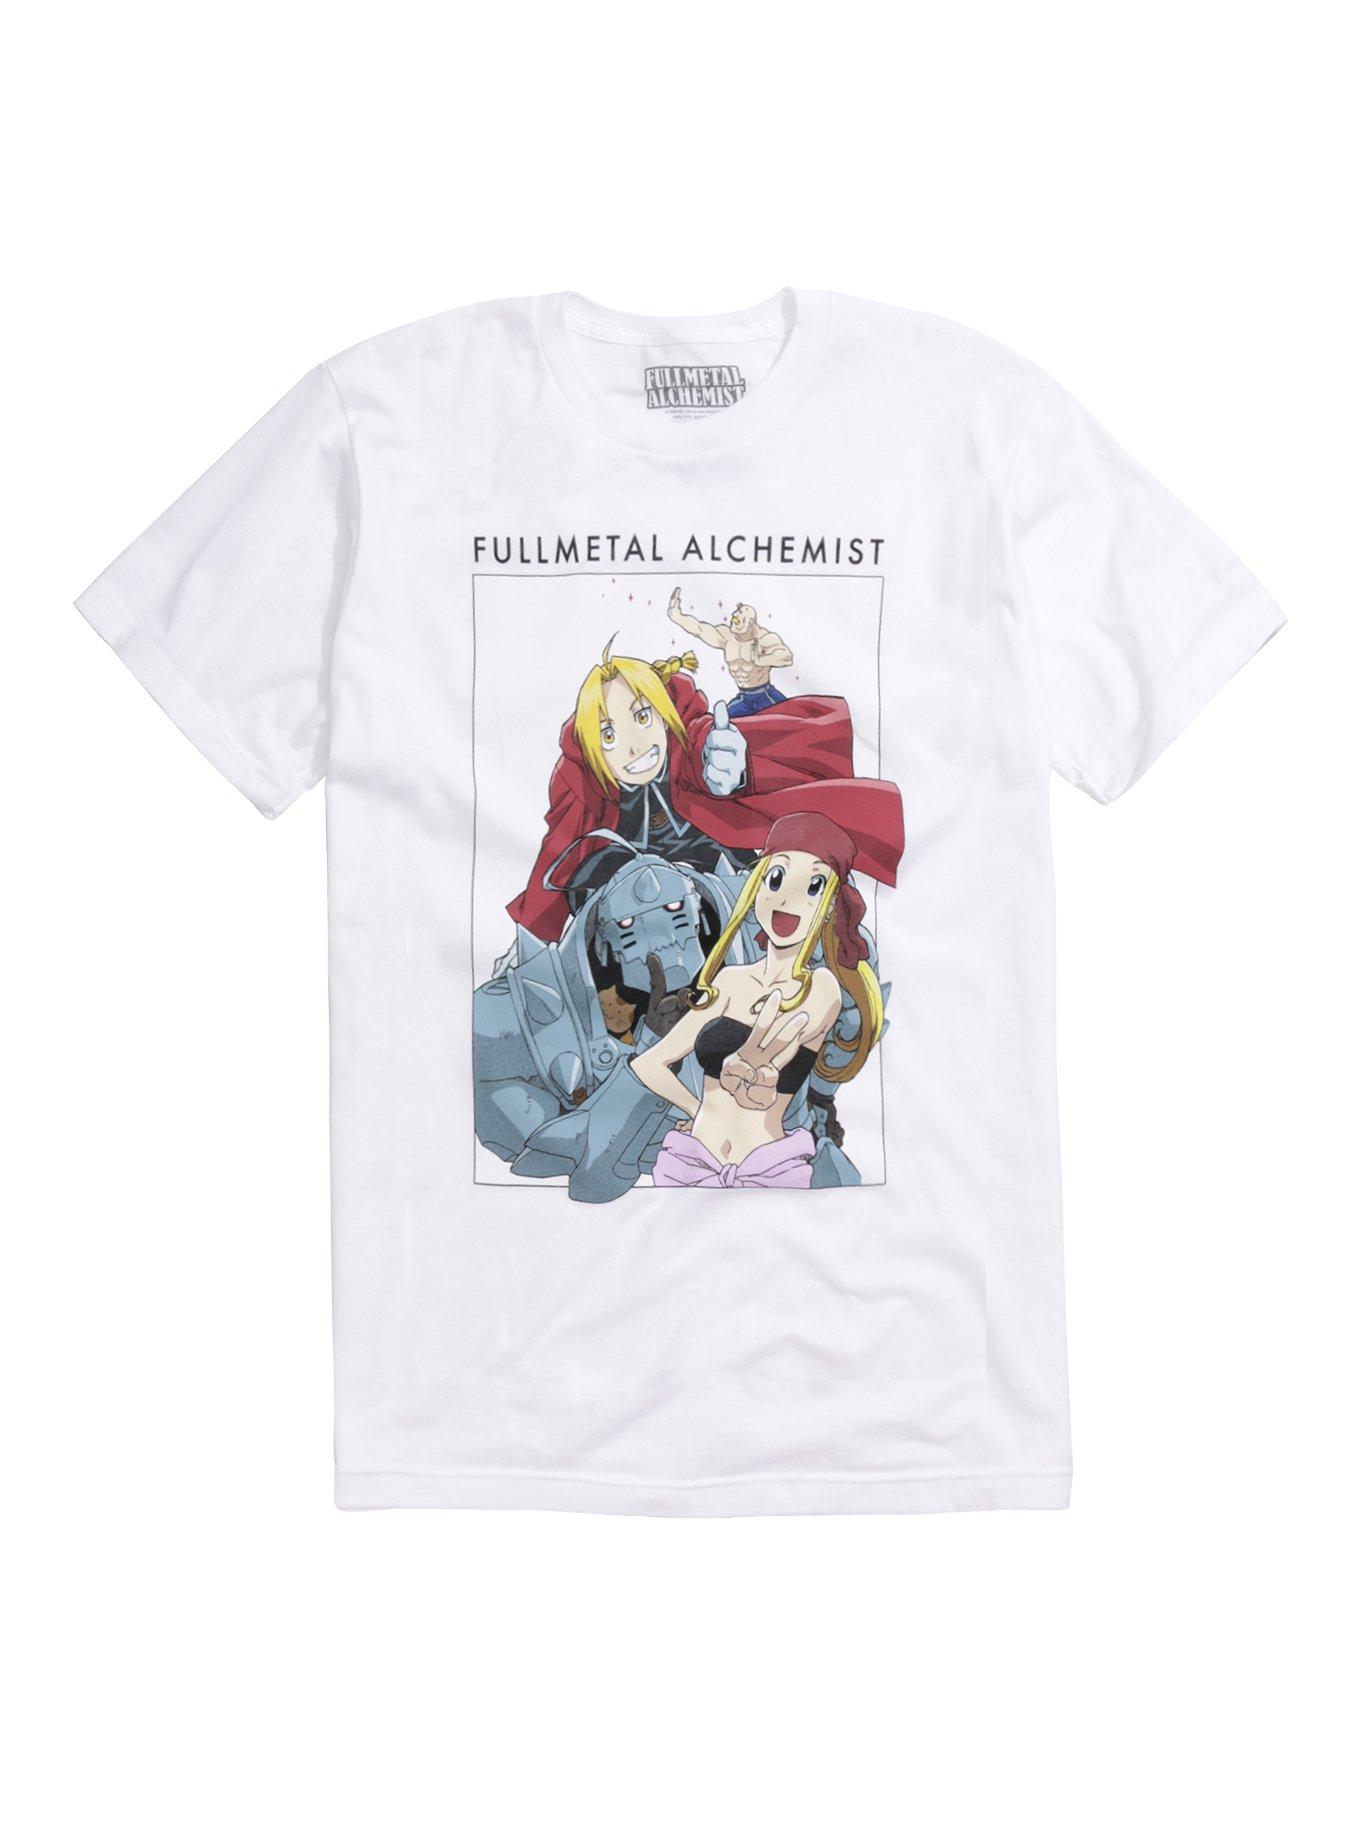 Fullmetal Alchemist Group Selfie Portrait T-Shirt, WHITE, hi-res